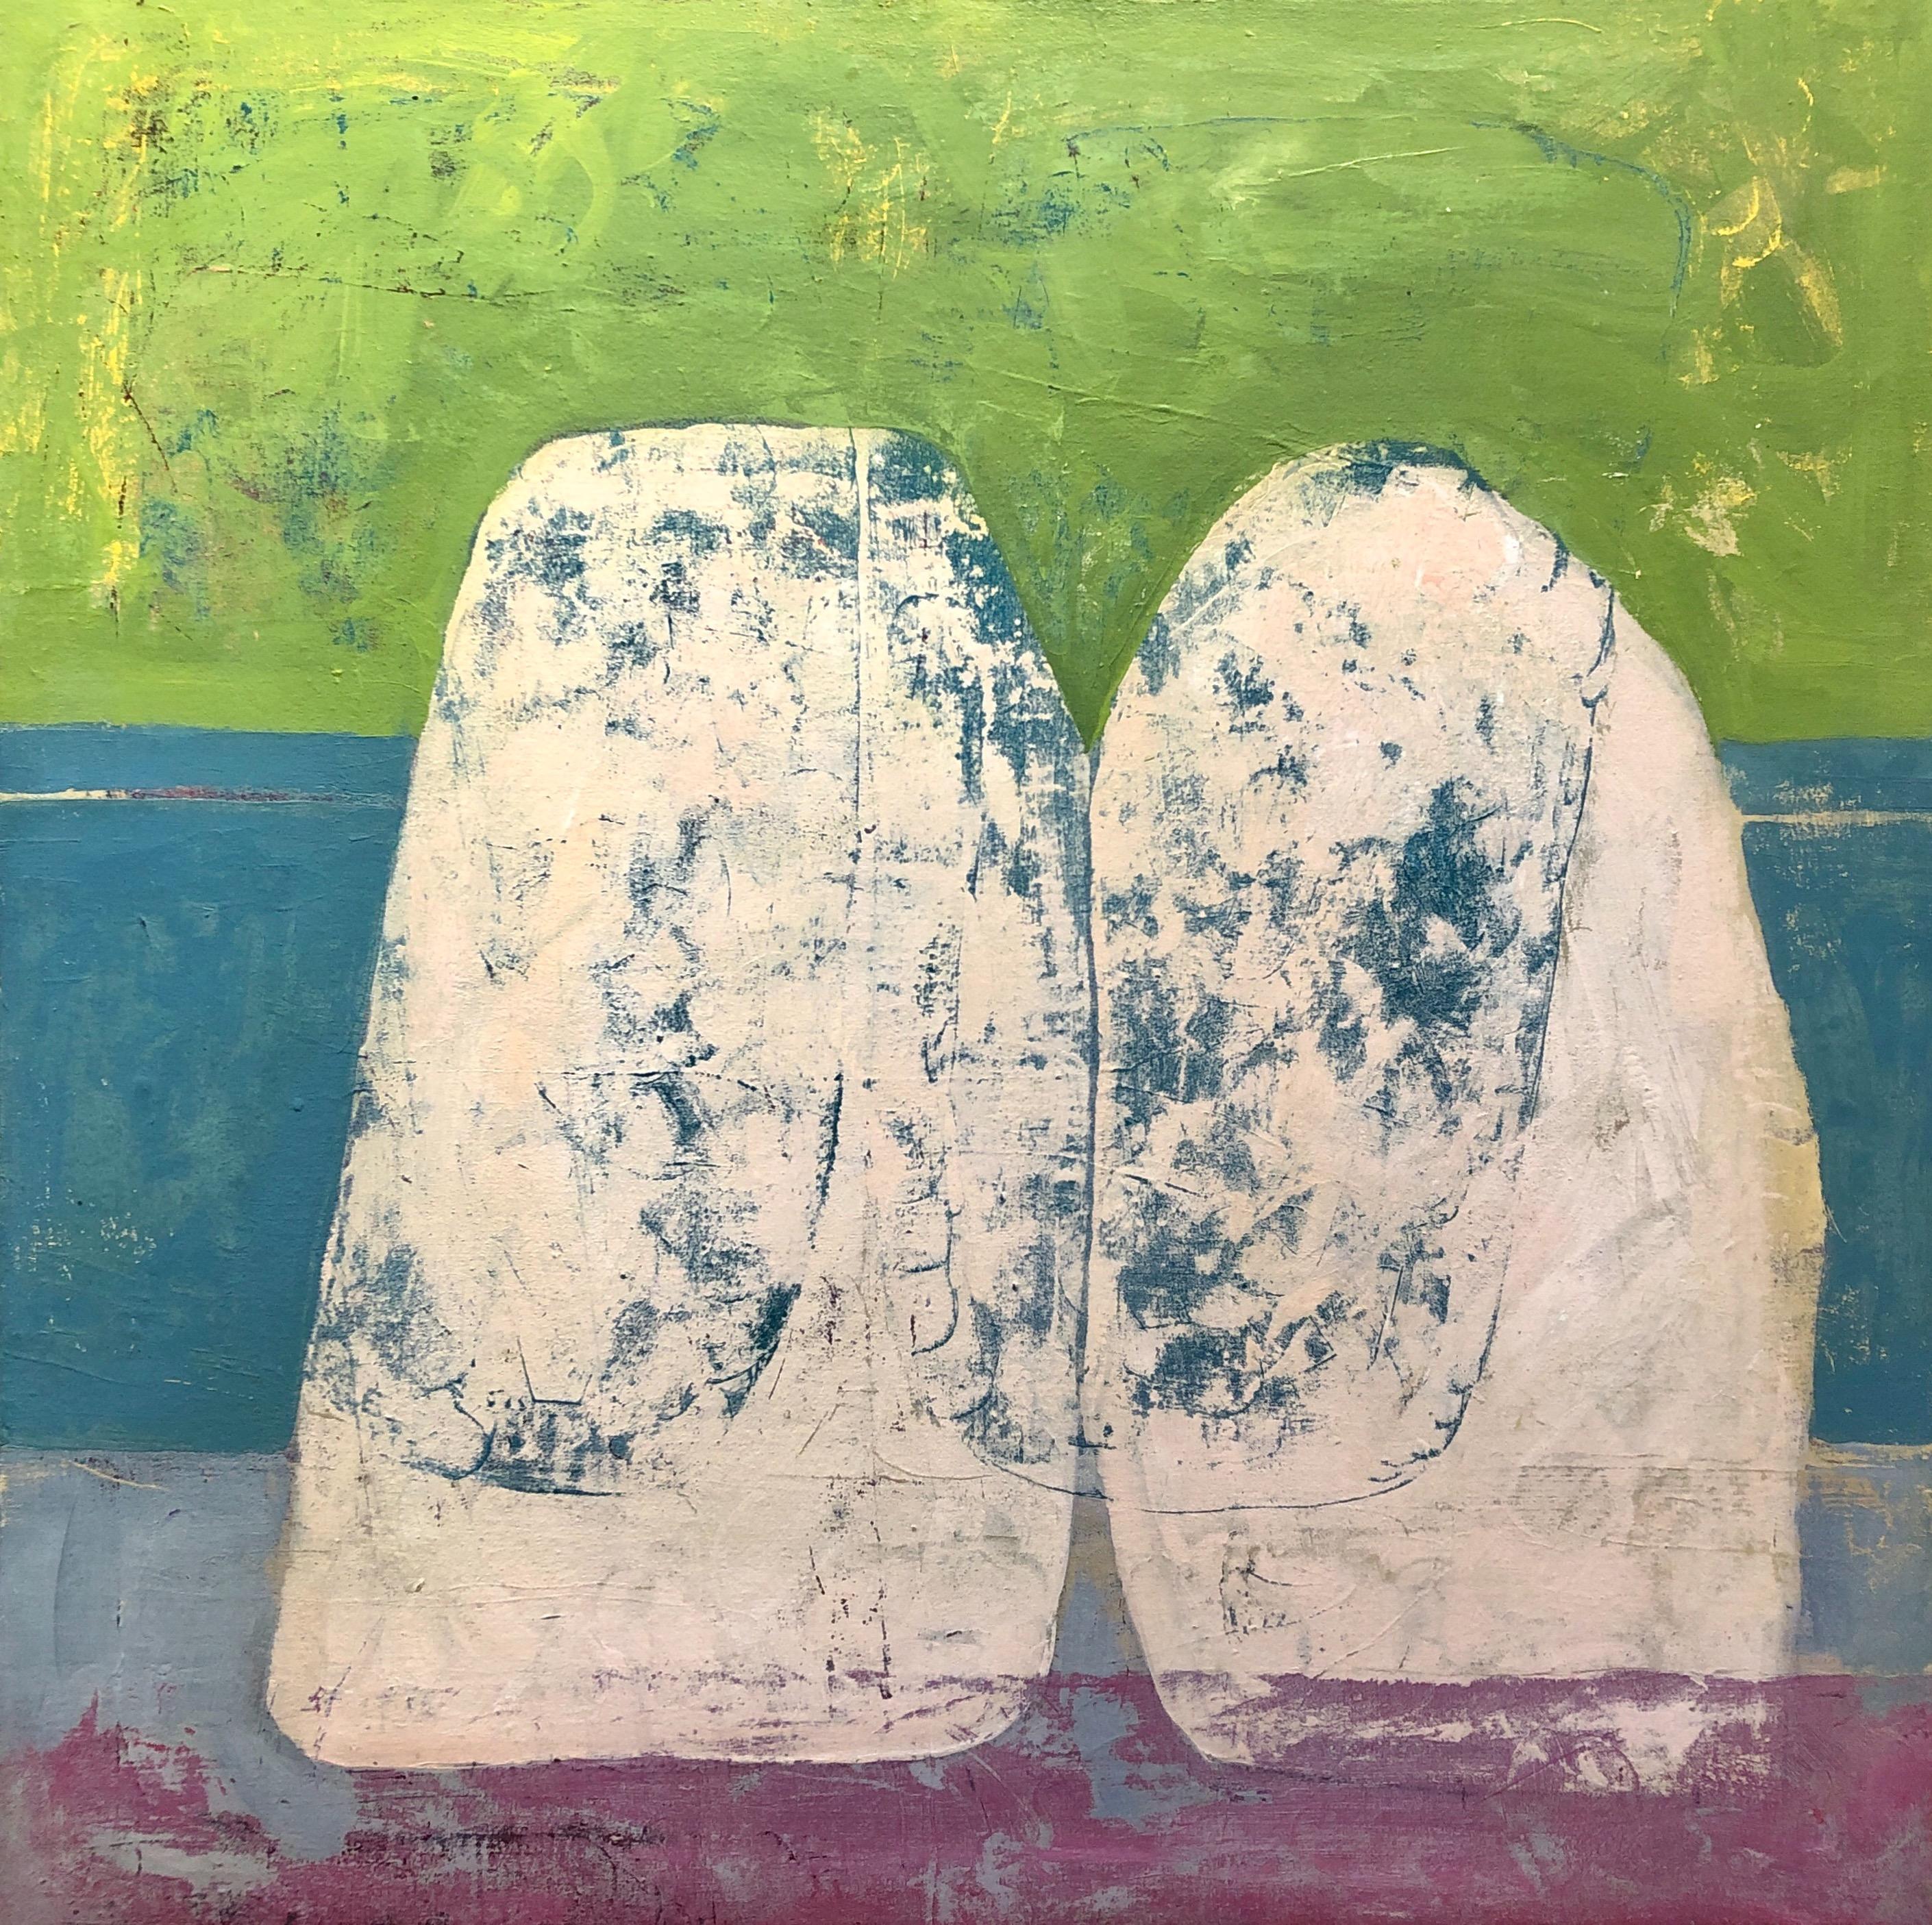 Abstract Painting Tom Gaines - Rock 106 : Peinture abstraite de mouette, verte, bleue et violette sur toile